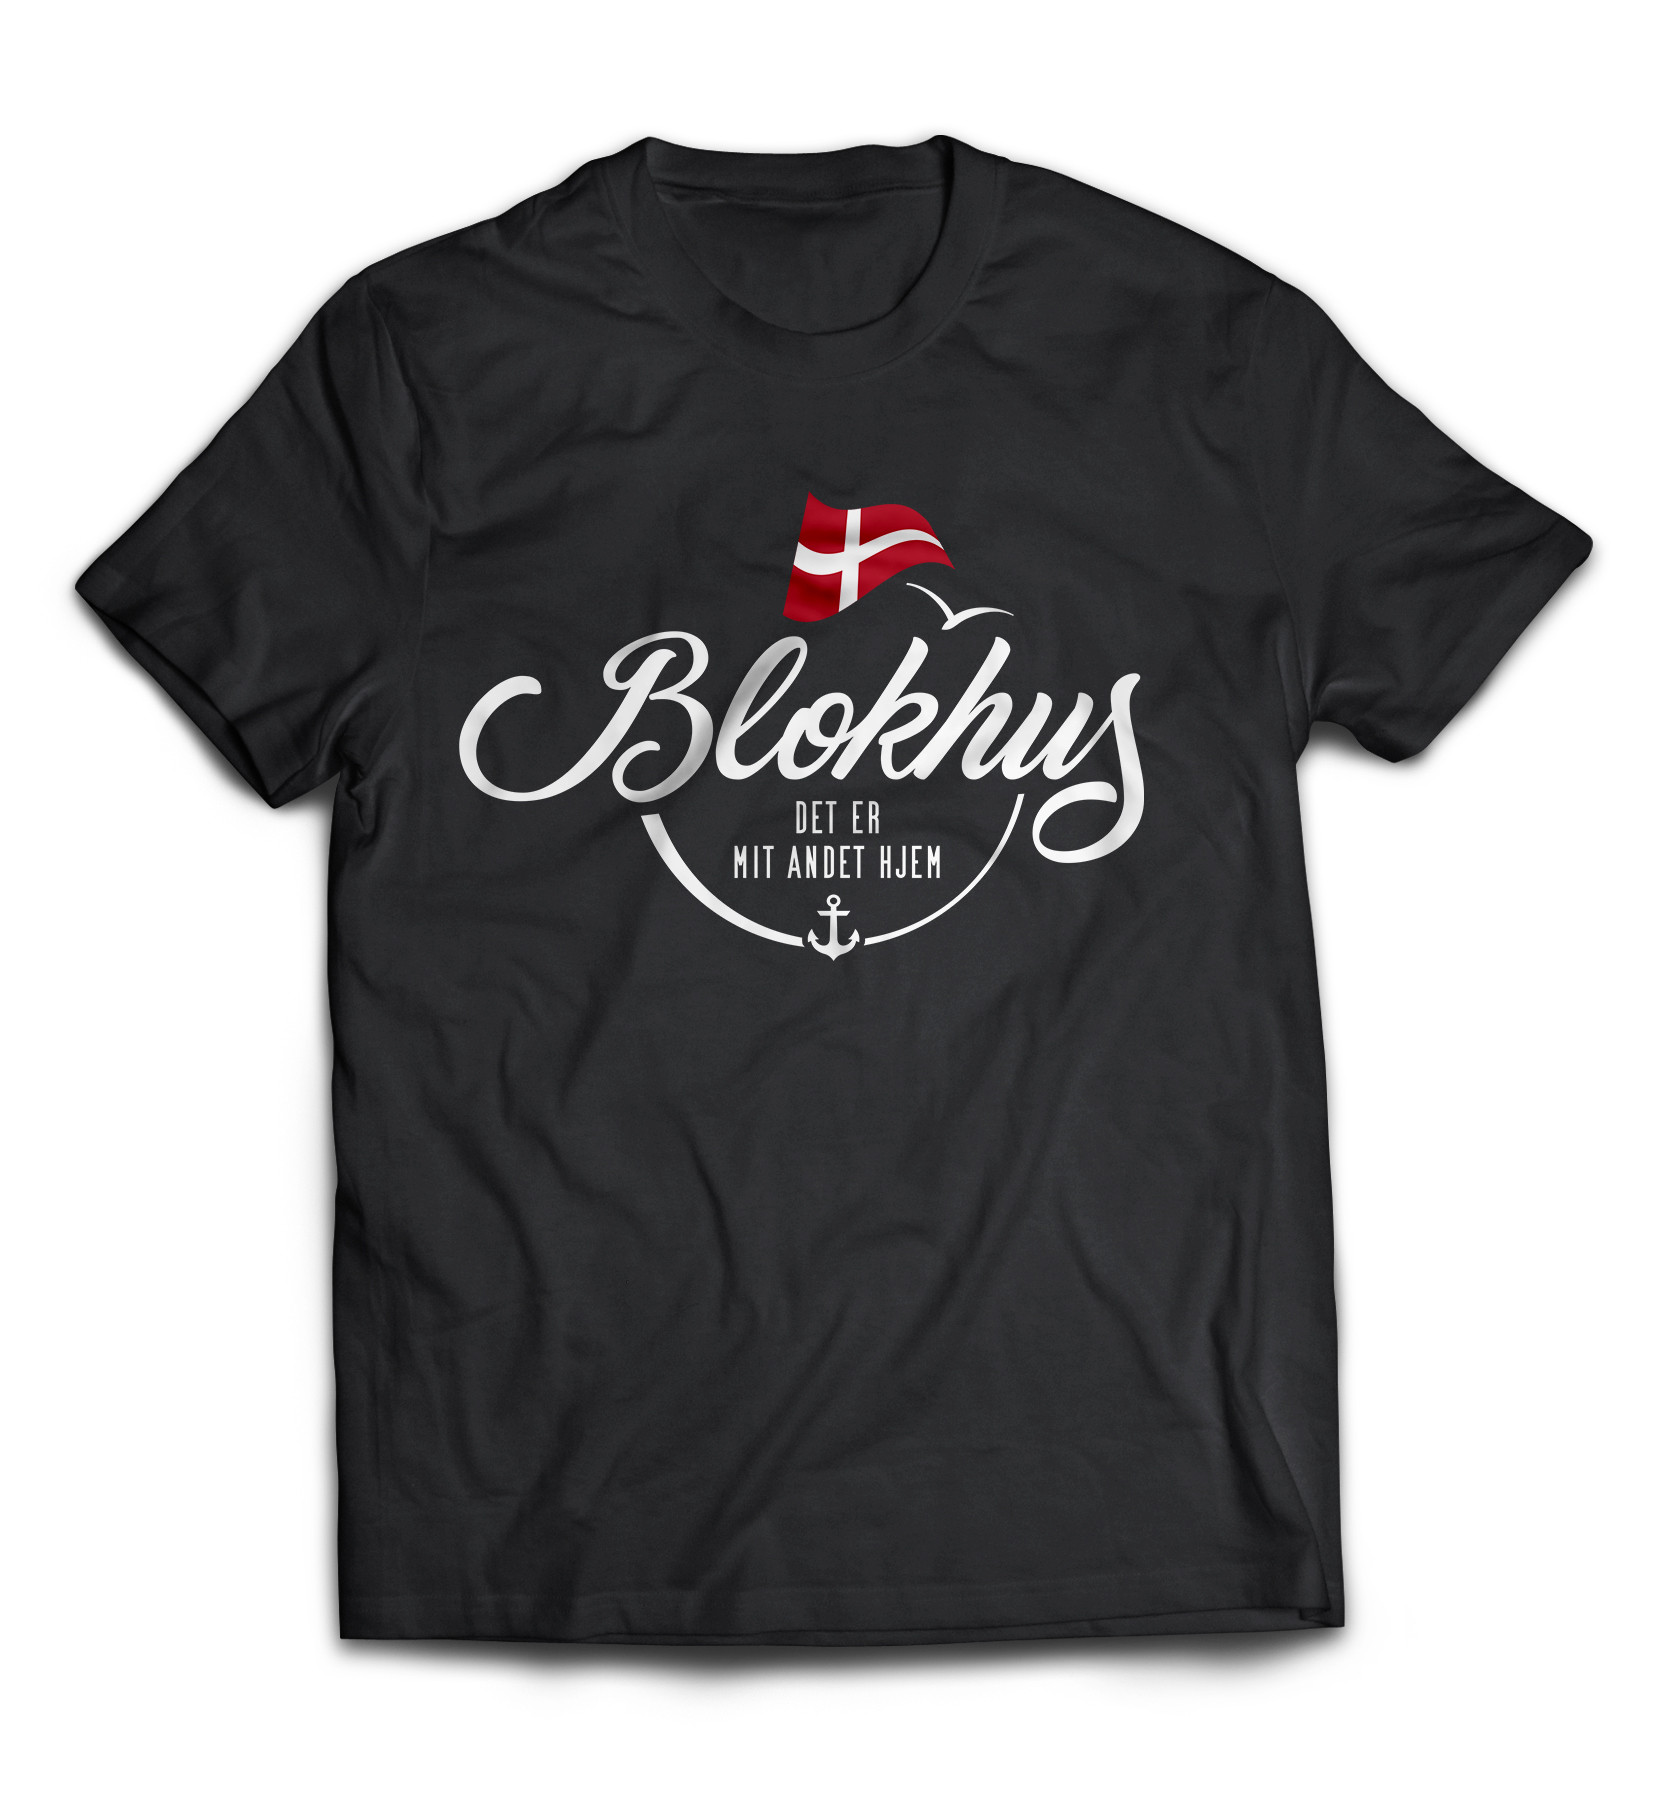 Dänemark - Meine zweite Heimat - T-Shirt "Blokhus"